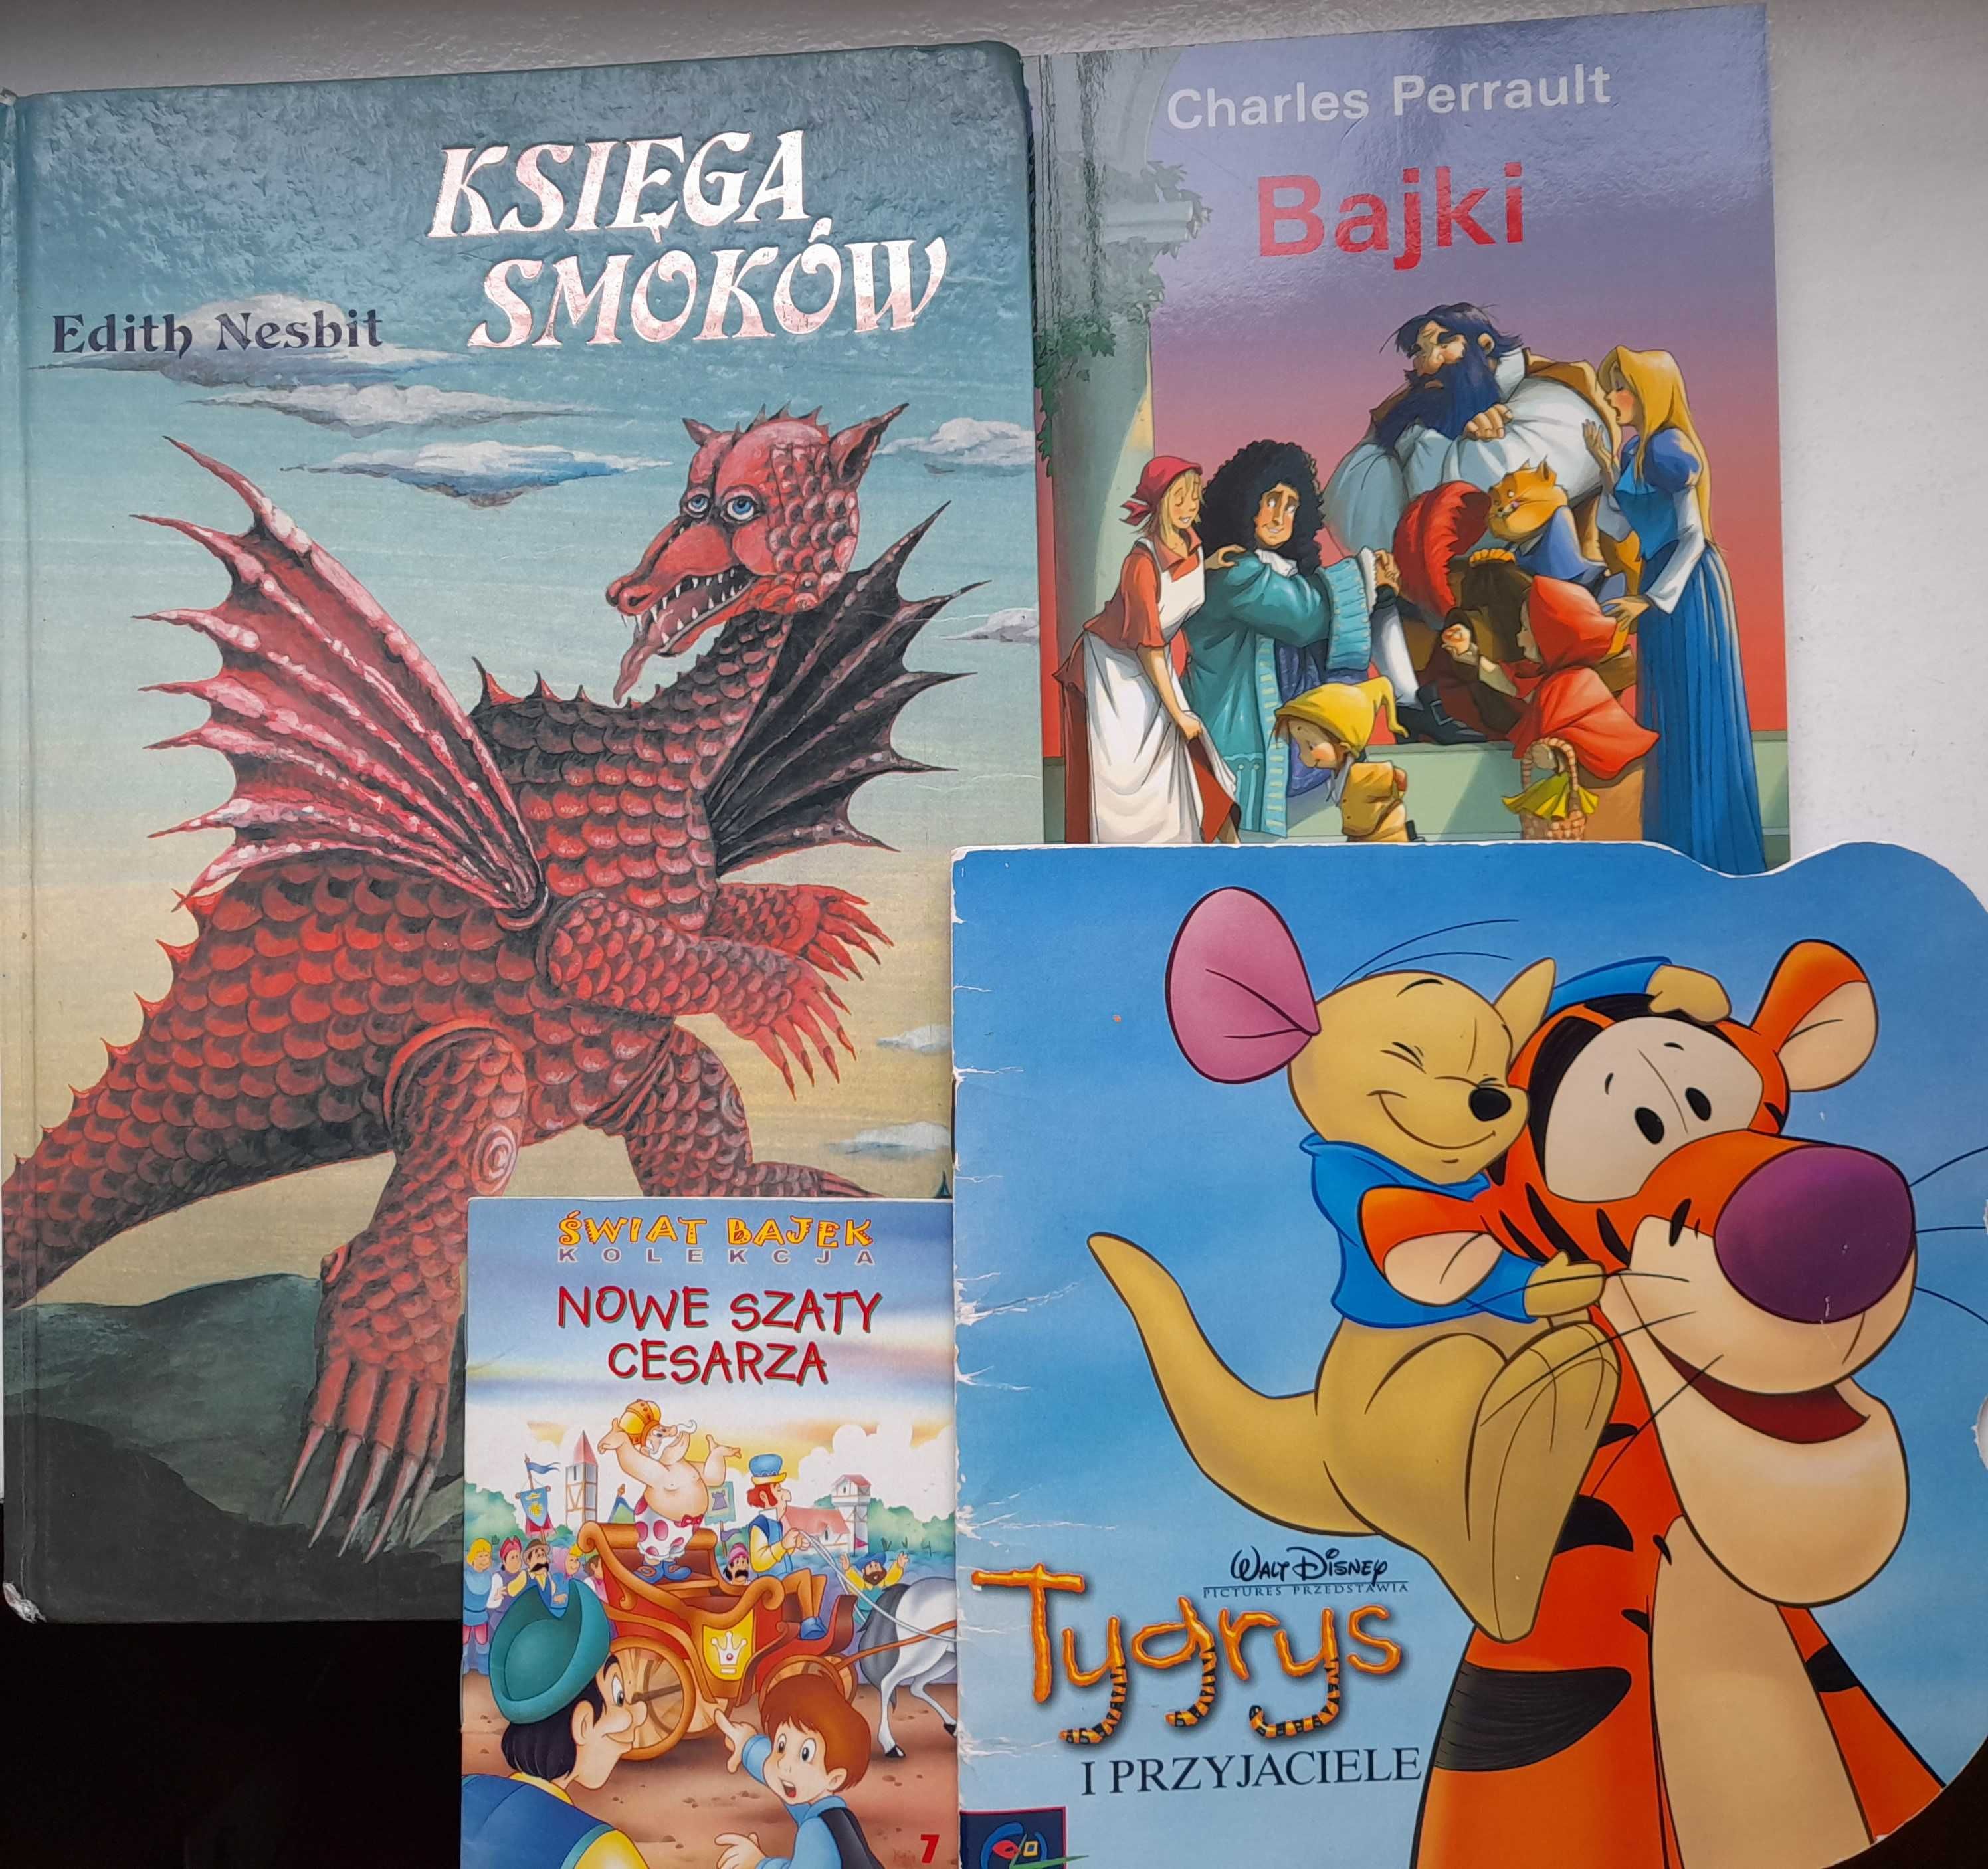 Księga Smoków, Bajki oraz książeczki Disney